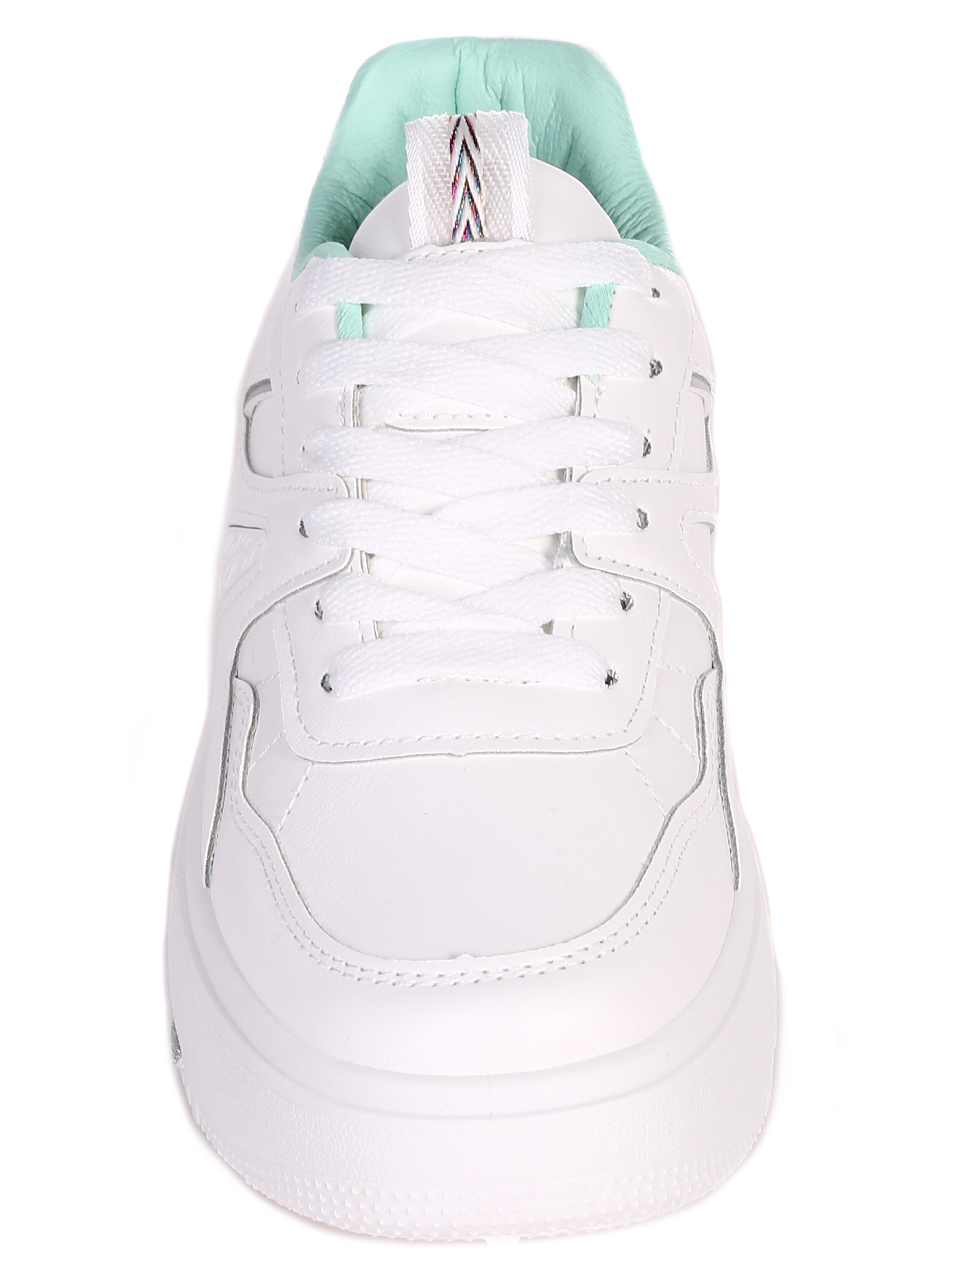 Ежедневни дамски комфортни обувки на платформа 3U-23055 white/green